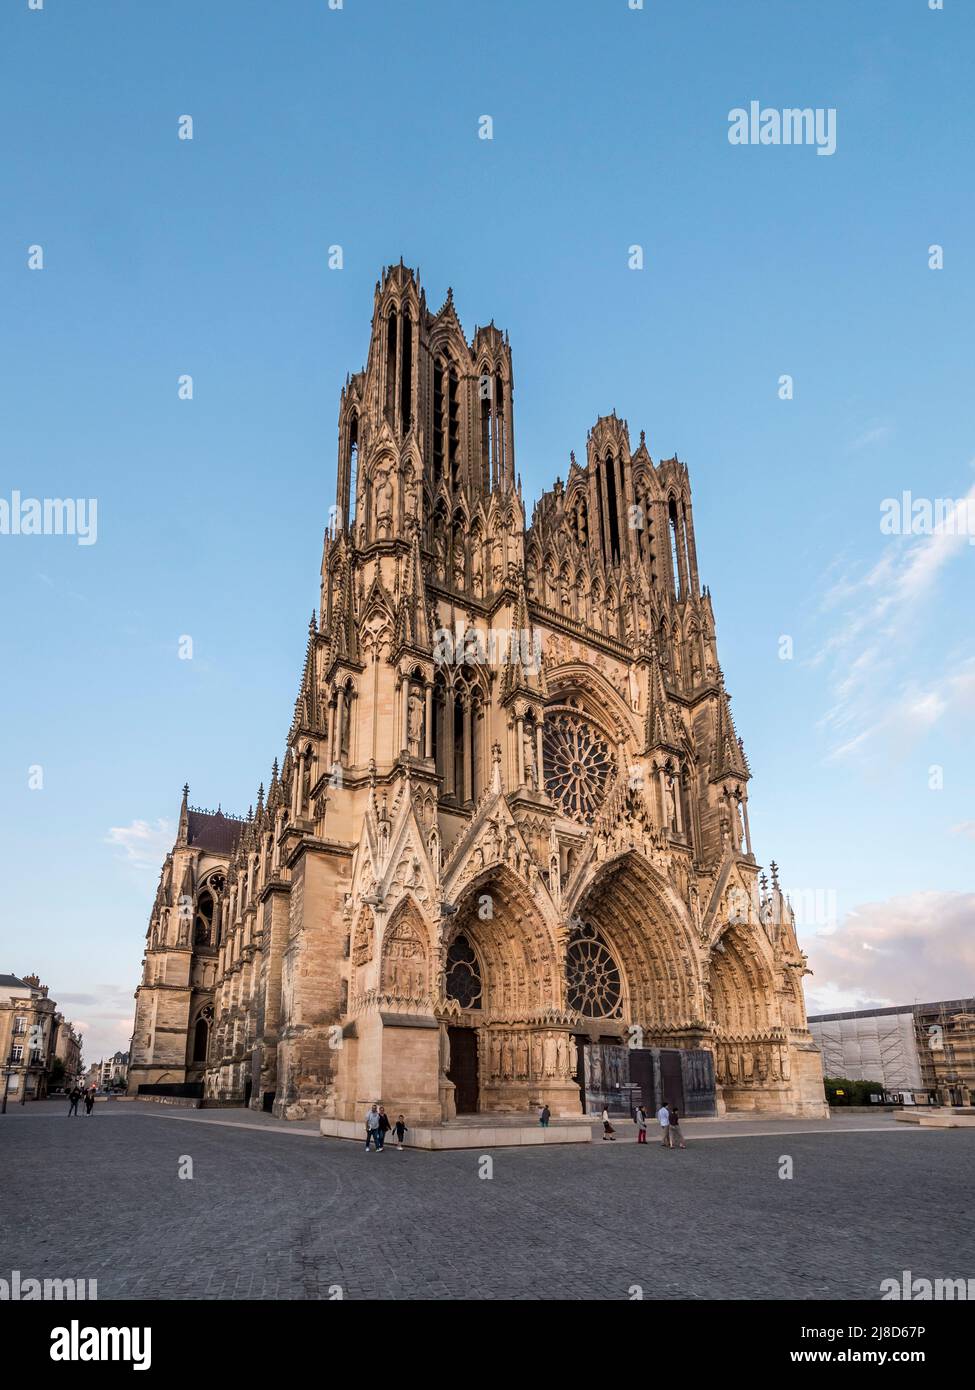 L'image est de la célèbre cathédrale notre Dame des Reims datant du 13th siècle, célèbre pour son association avec Jeanne d'Arc, qui surplombe la place de la ville. Banque D'Images